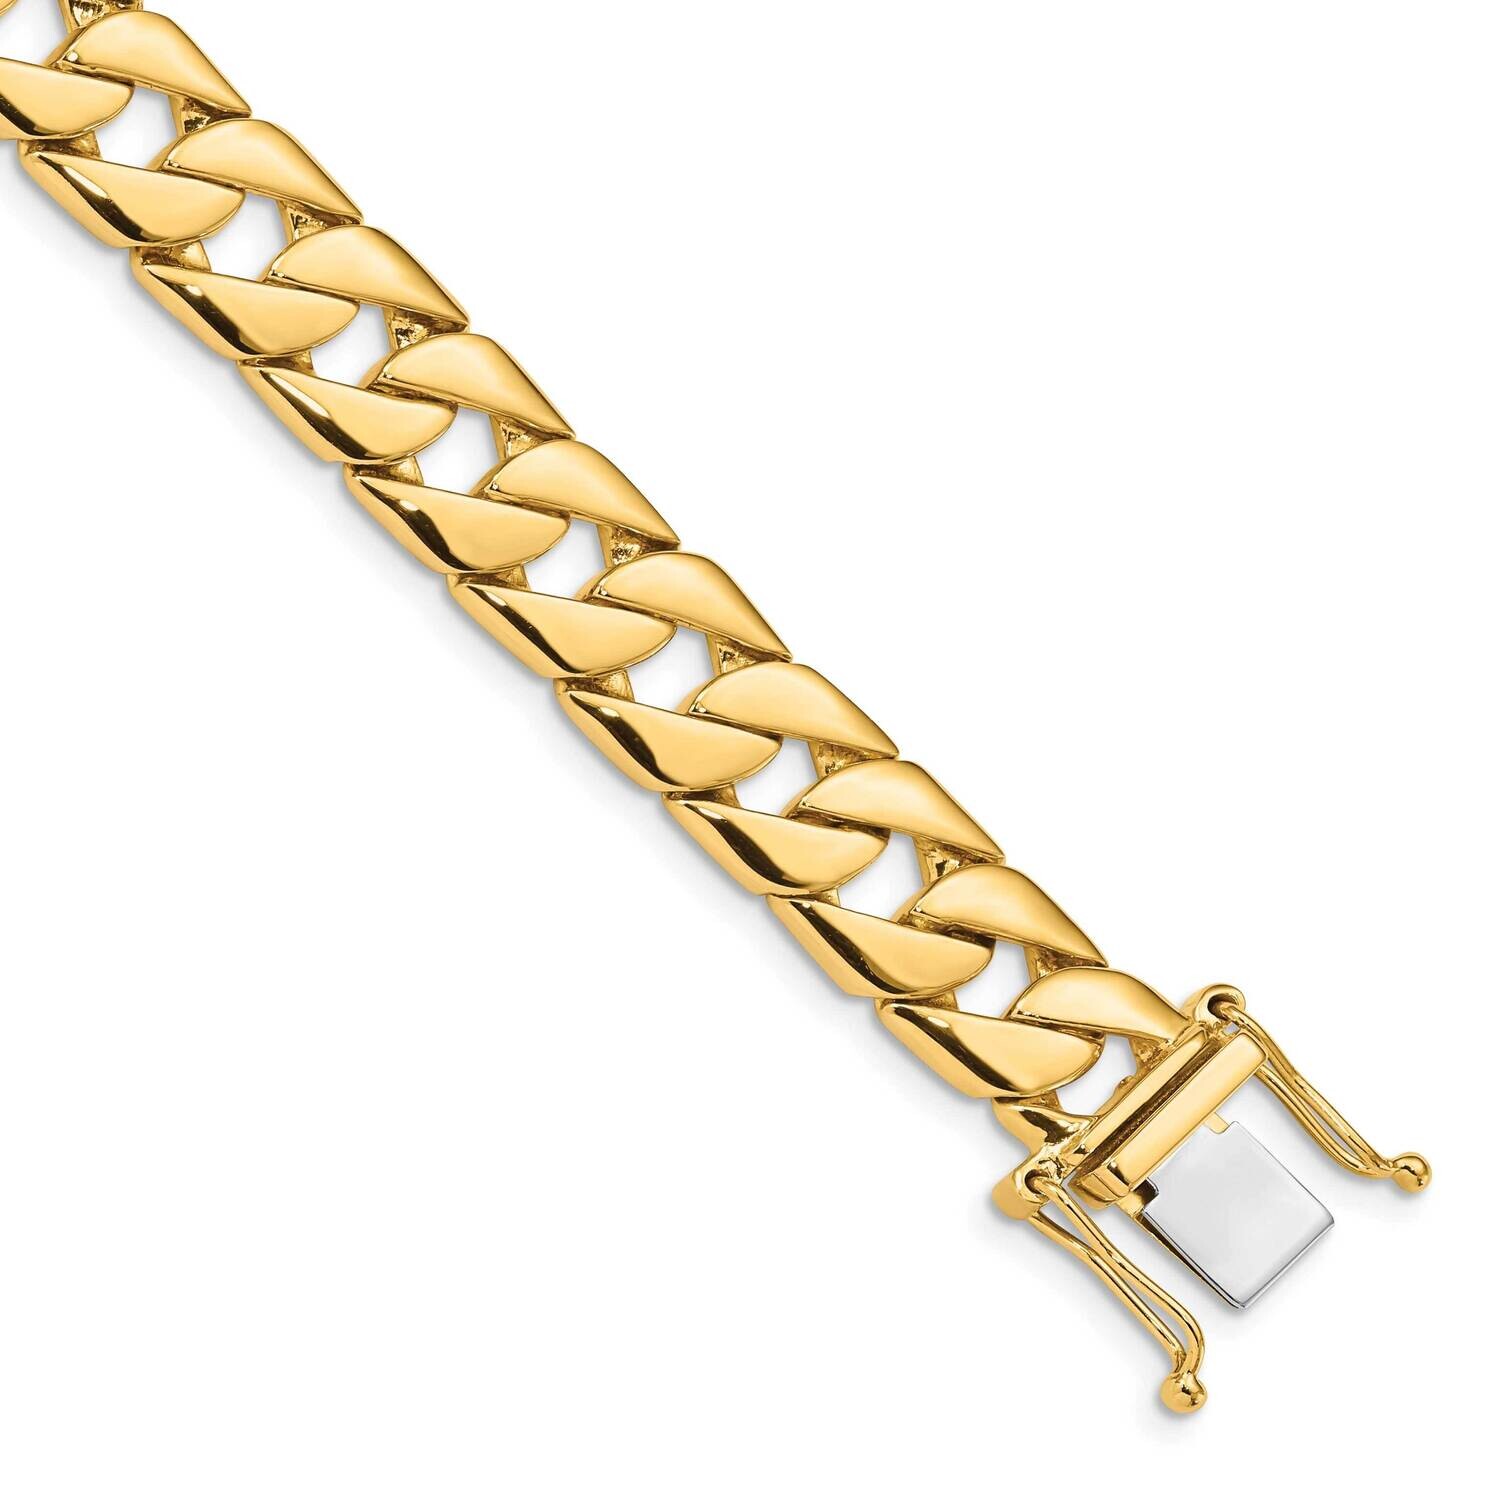 10.2mm Hand-Polished Fancy Link Bracelet 9 Inch 10k Gold 10LK141-9